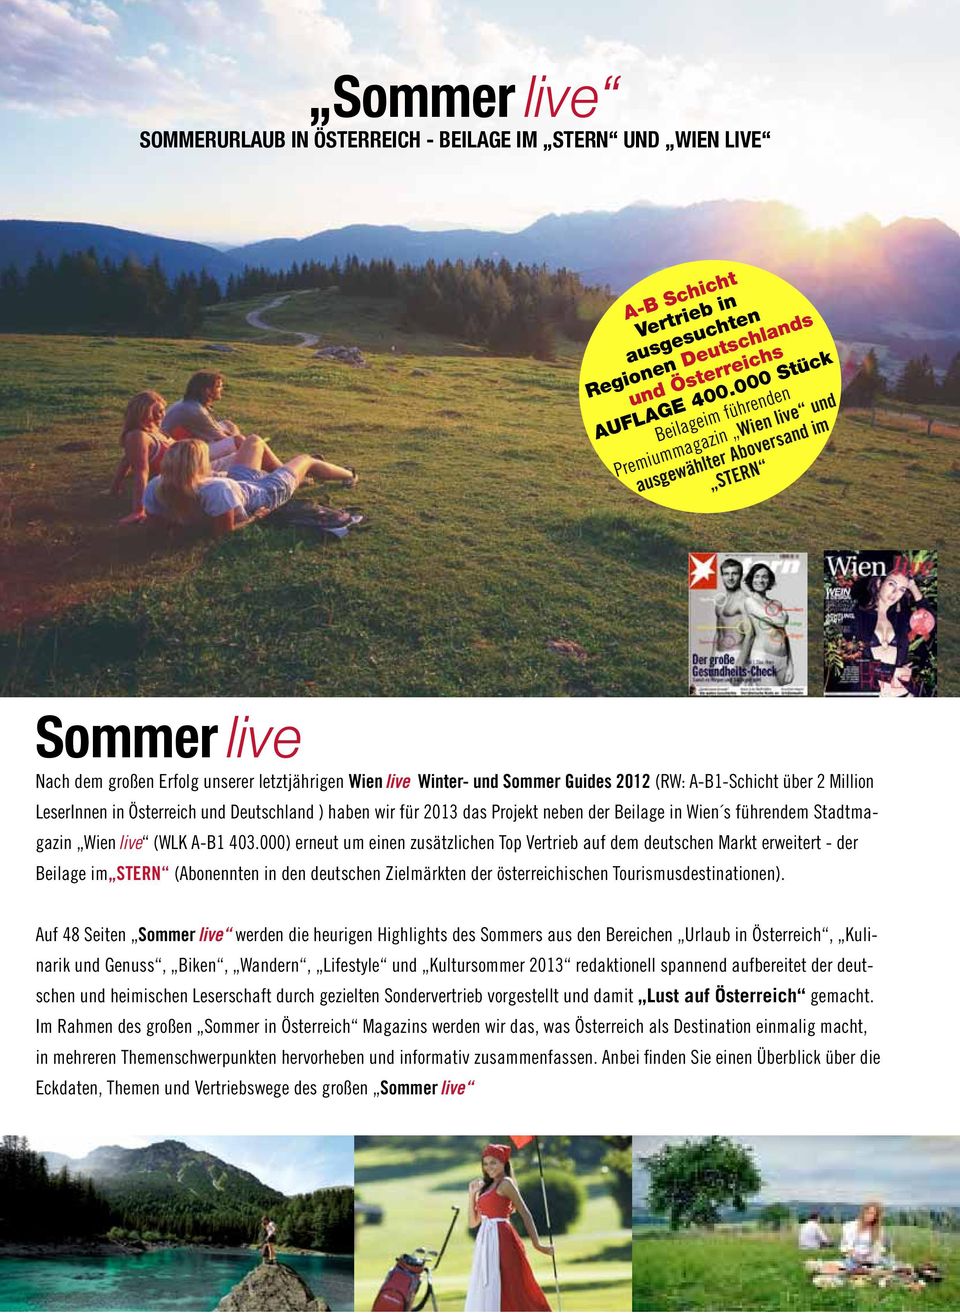 A-B1-Schicht über 2 Million LeserInnen in Österreich und Deutschland ) haben wir für 2013 das Projekt neben der Beilage in Wien s führendem Stadtmagazin Wien live (WLK A-B1 403.